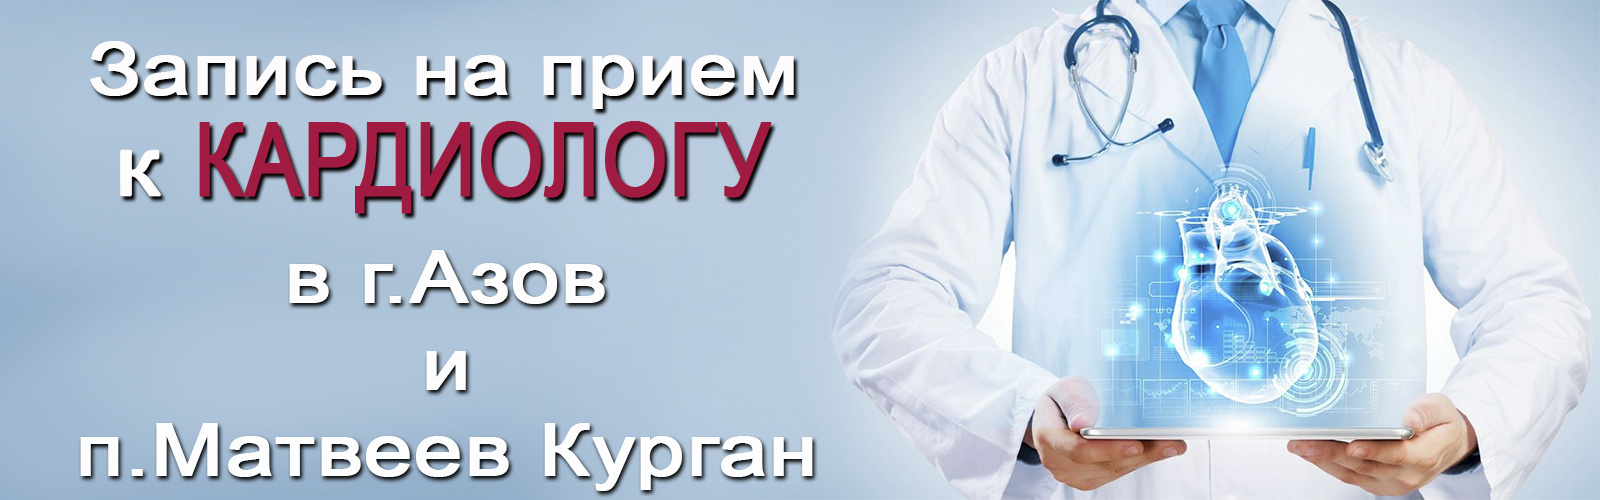 Запись на прием к кардиологу в Азове и Матвеев Кургане